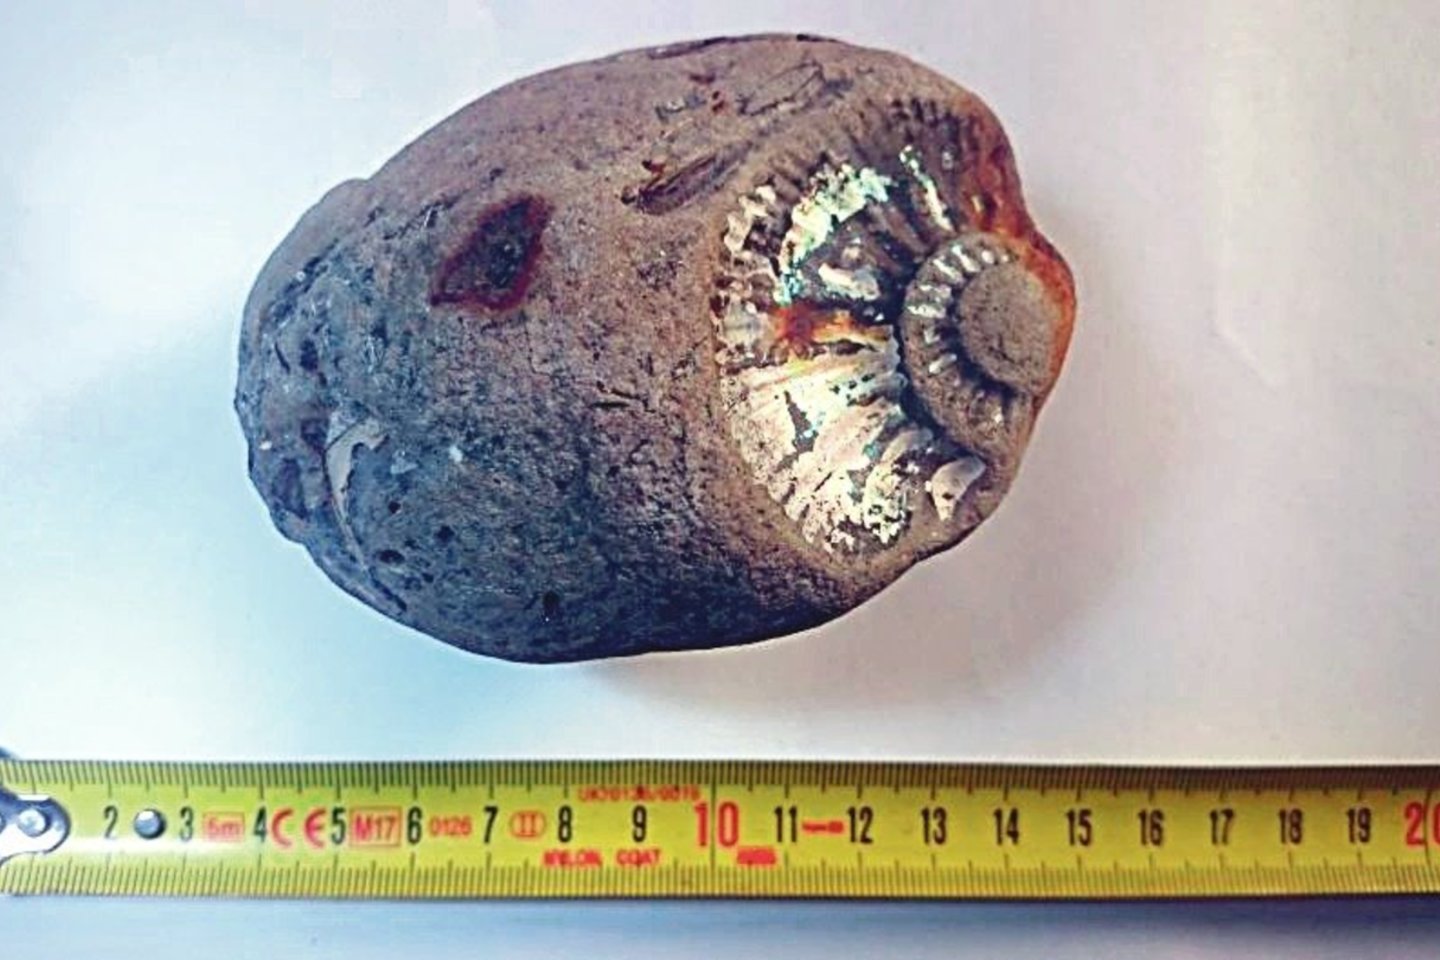 Gintaro rinkėjai pajūryje ties Karkle aptiko prieš milijonus metų gyvenusio galvakojo moliusko liekaną.<br>PRP nuotr.